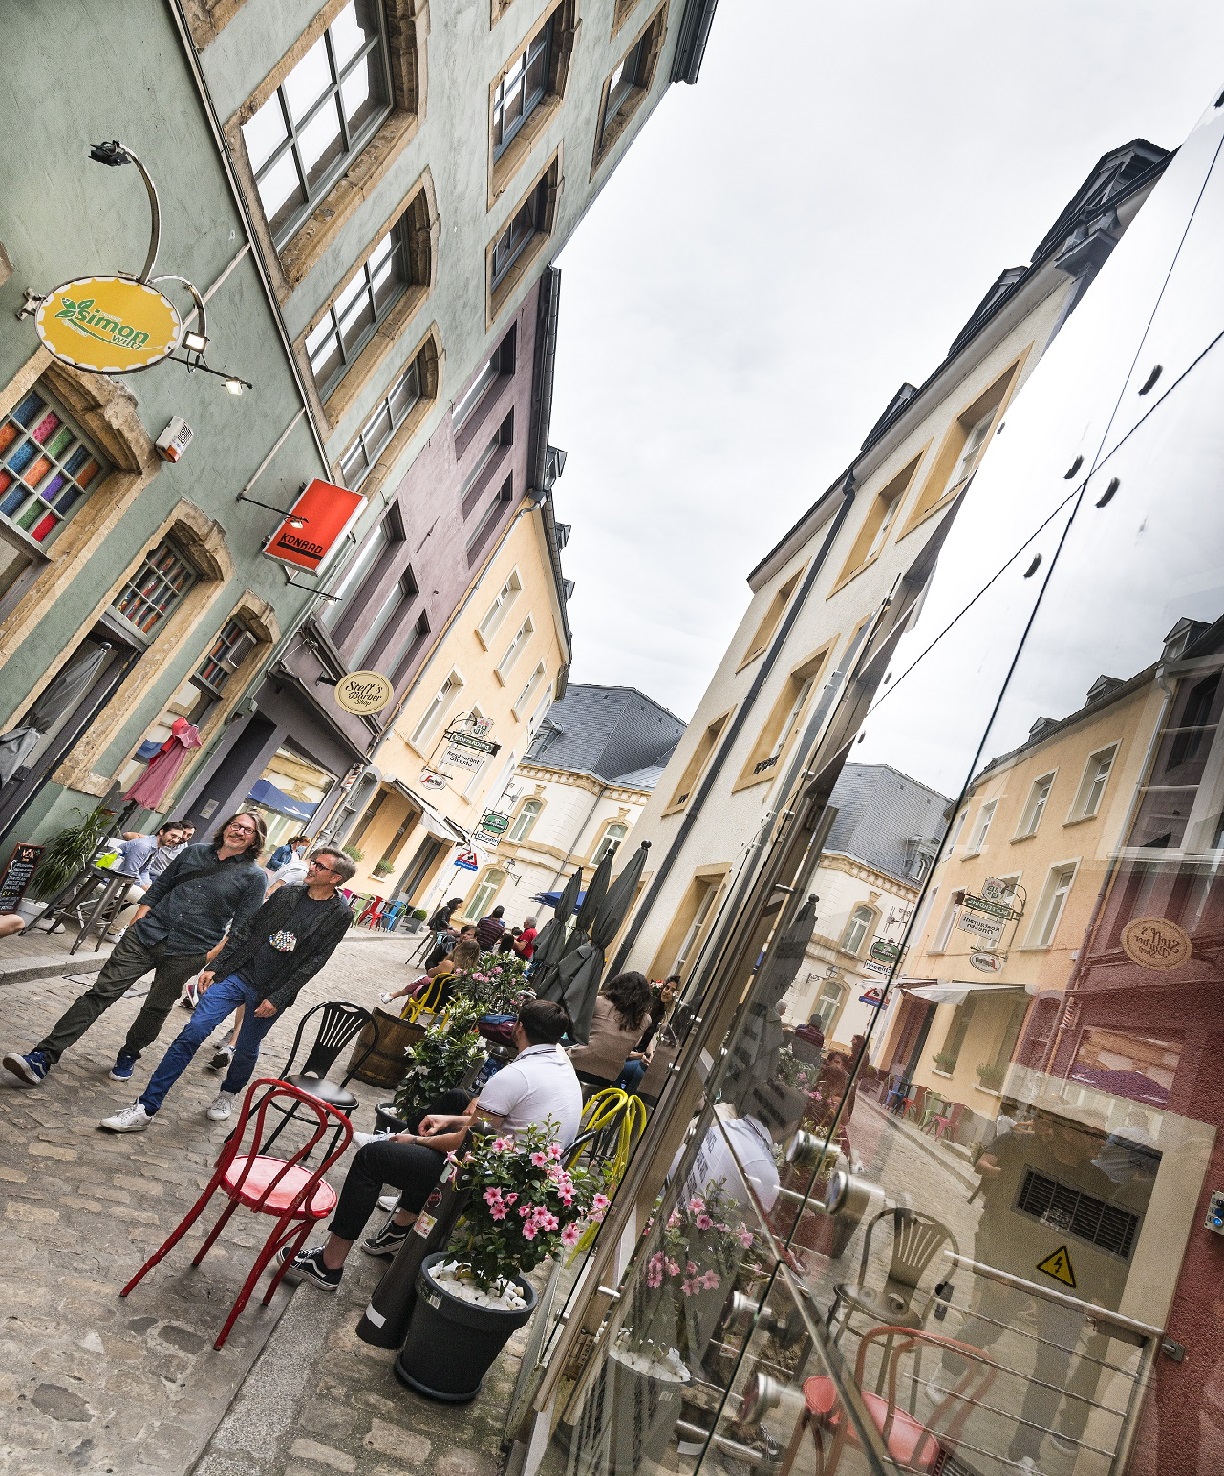 Eine Gasse der Altstadt Luxemburg mit bunten Häusern und Cafés. Zwei Männer laufen durch die Gasse. Ein Mann sitzt vor einem Café.